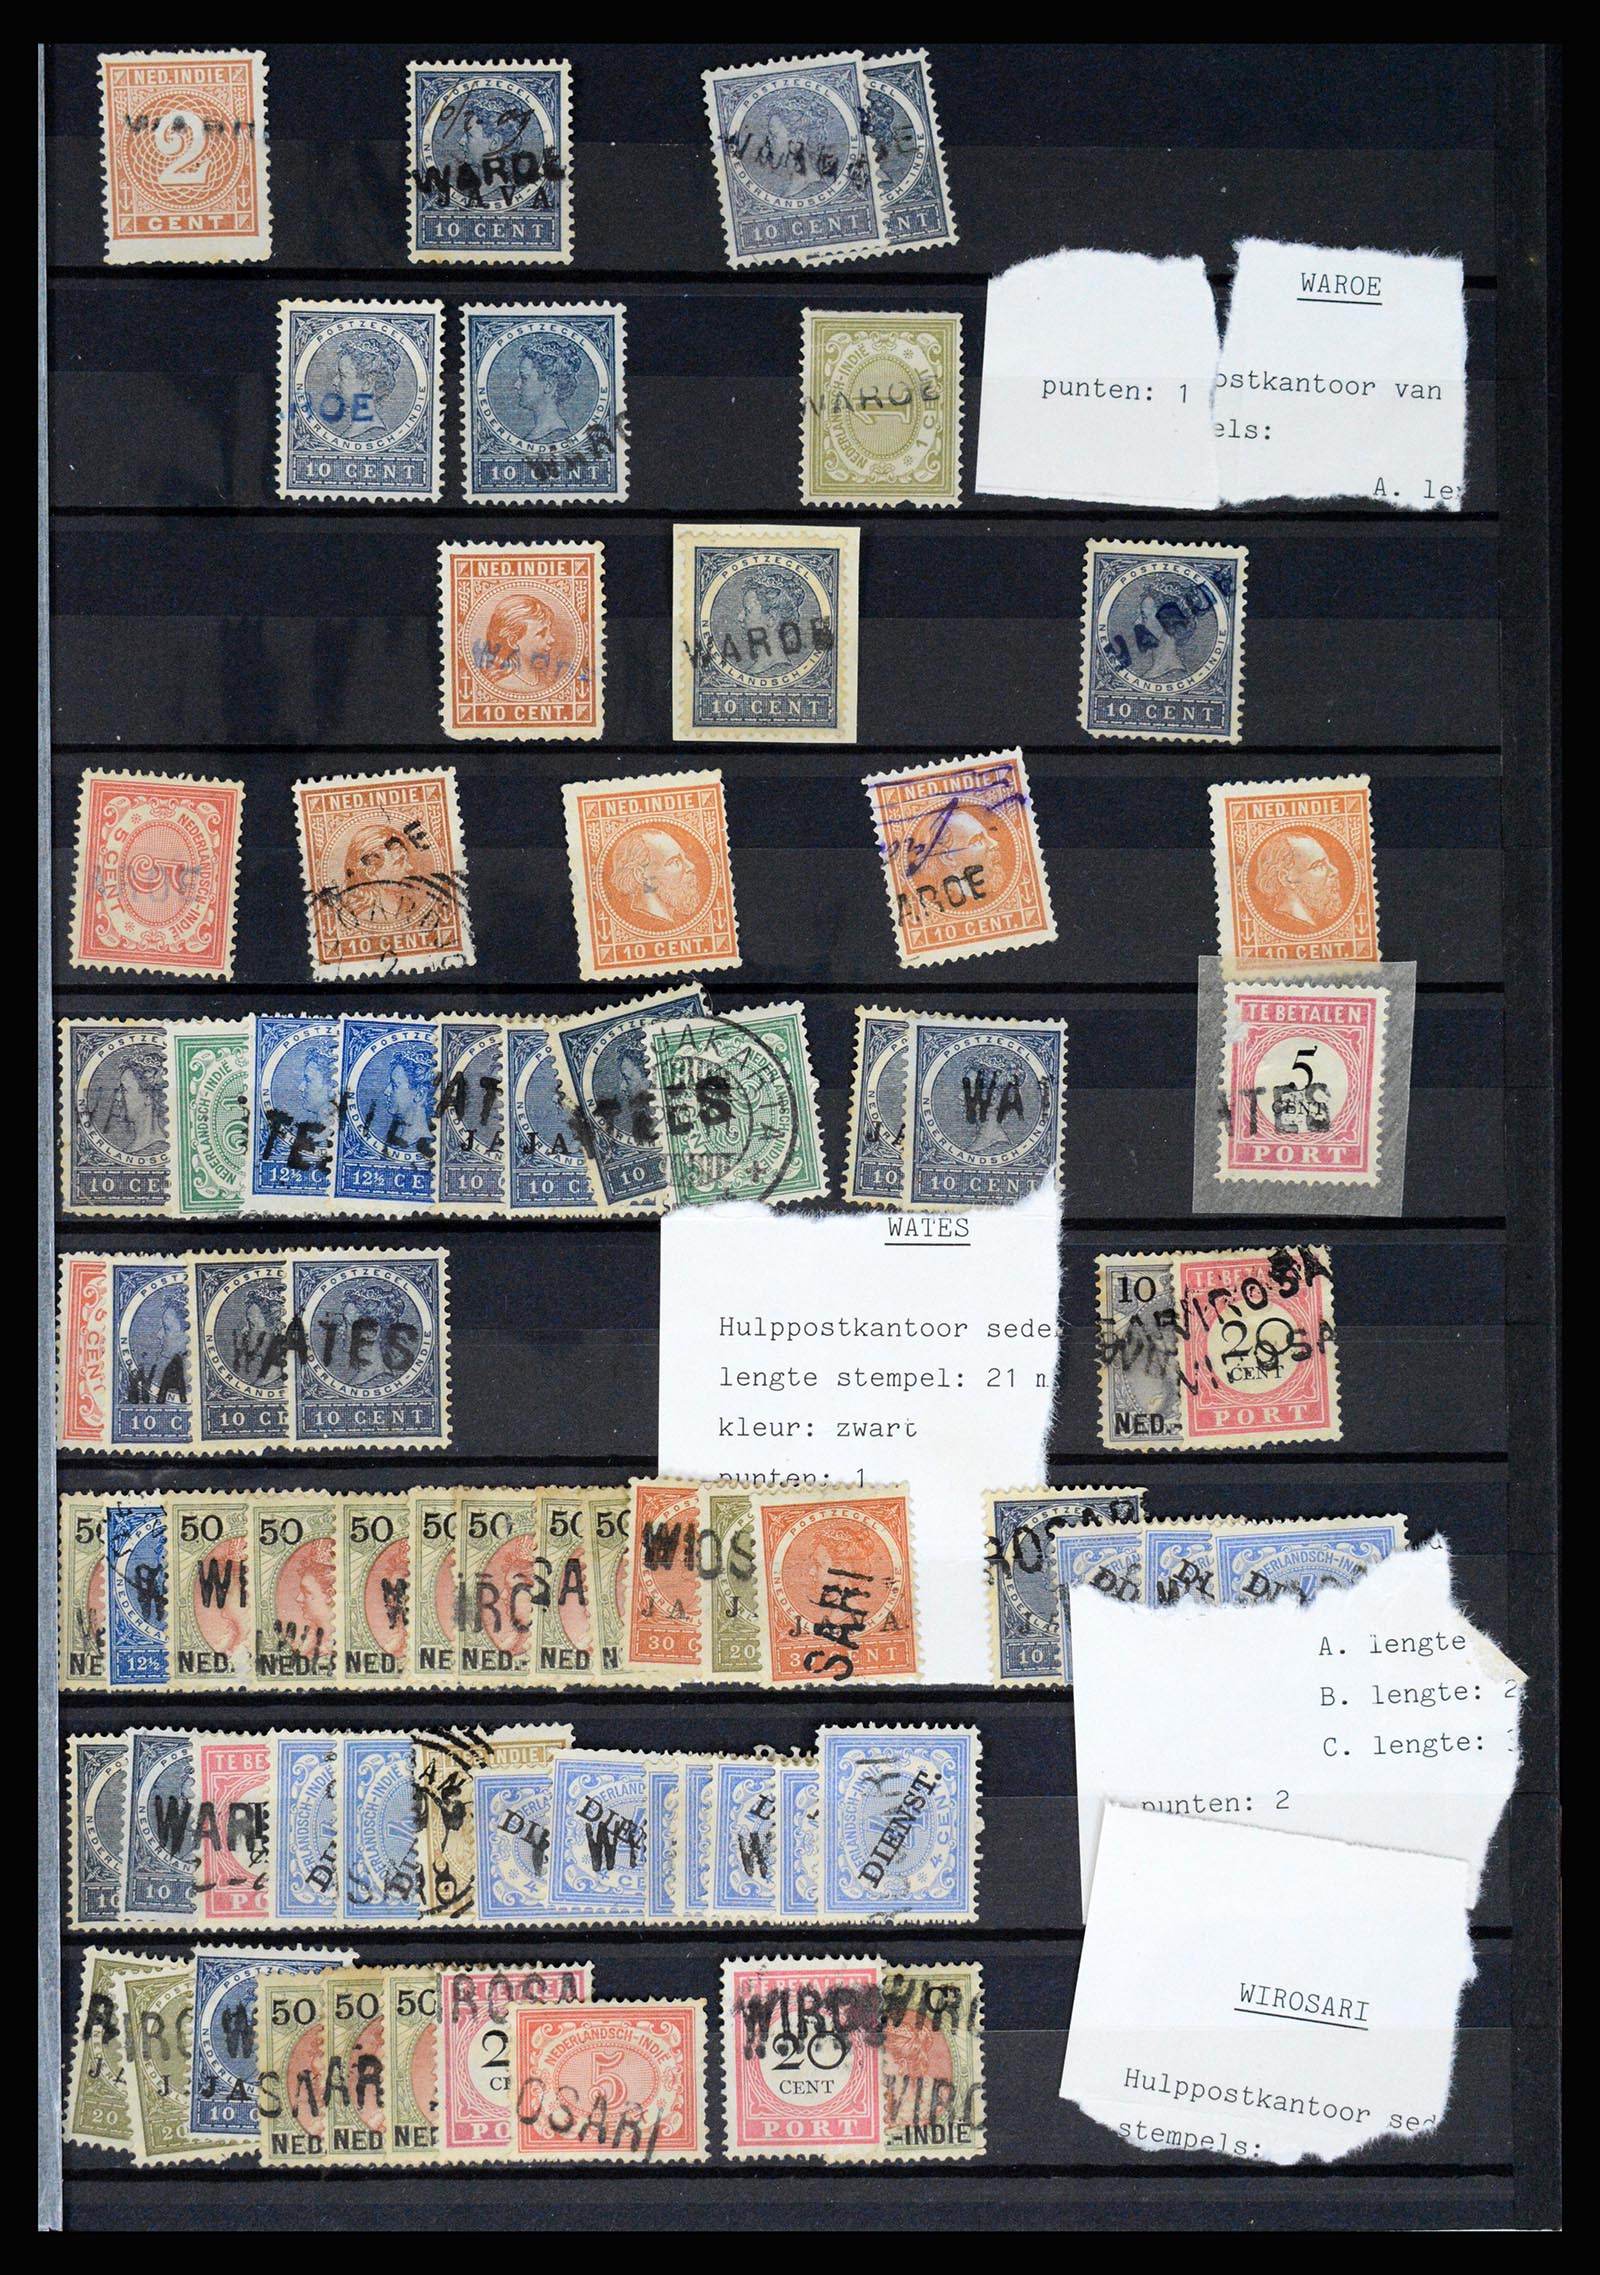 36512 077 - Stamp collection 36512 Nederlands Indië stempels 1872-1930.